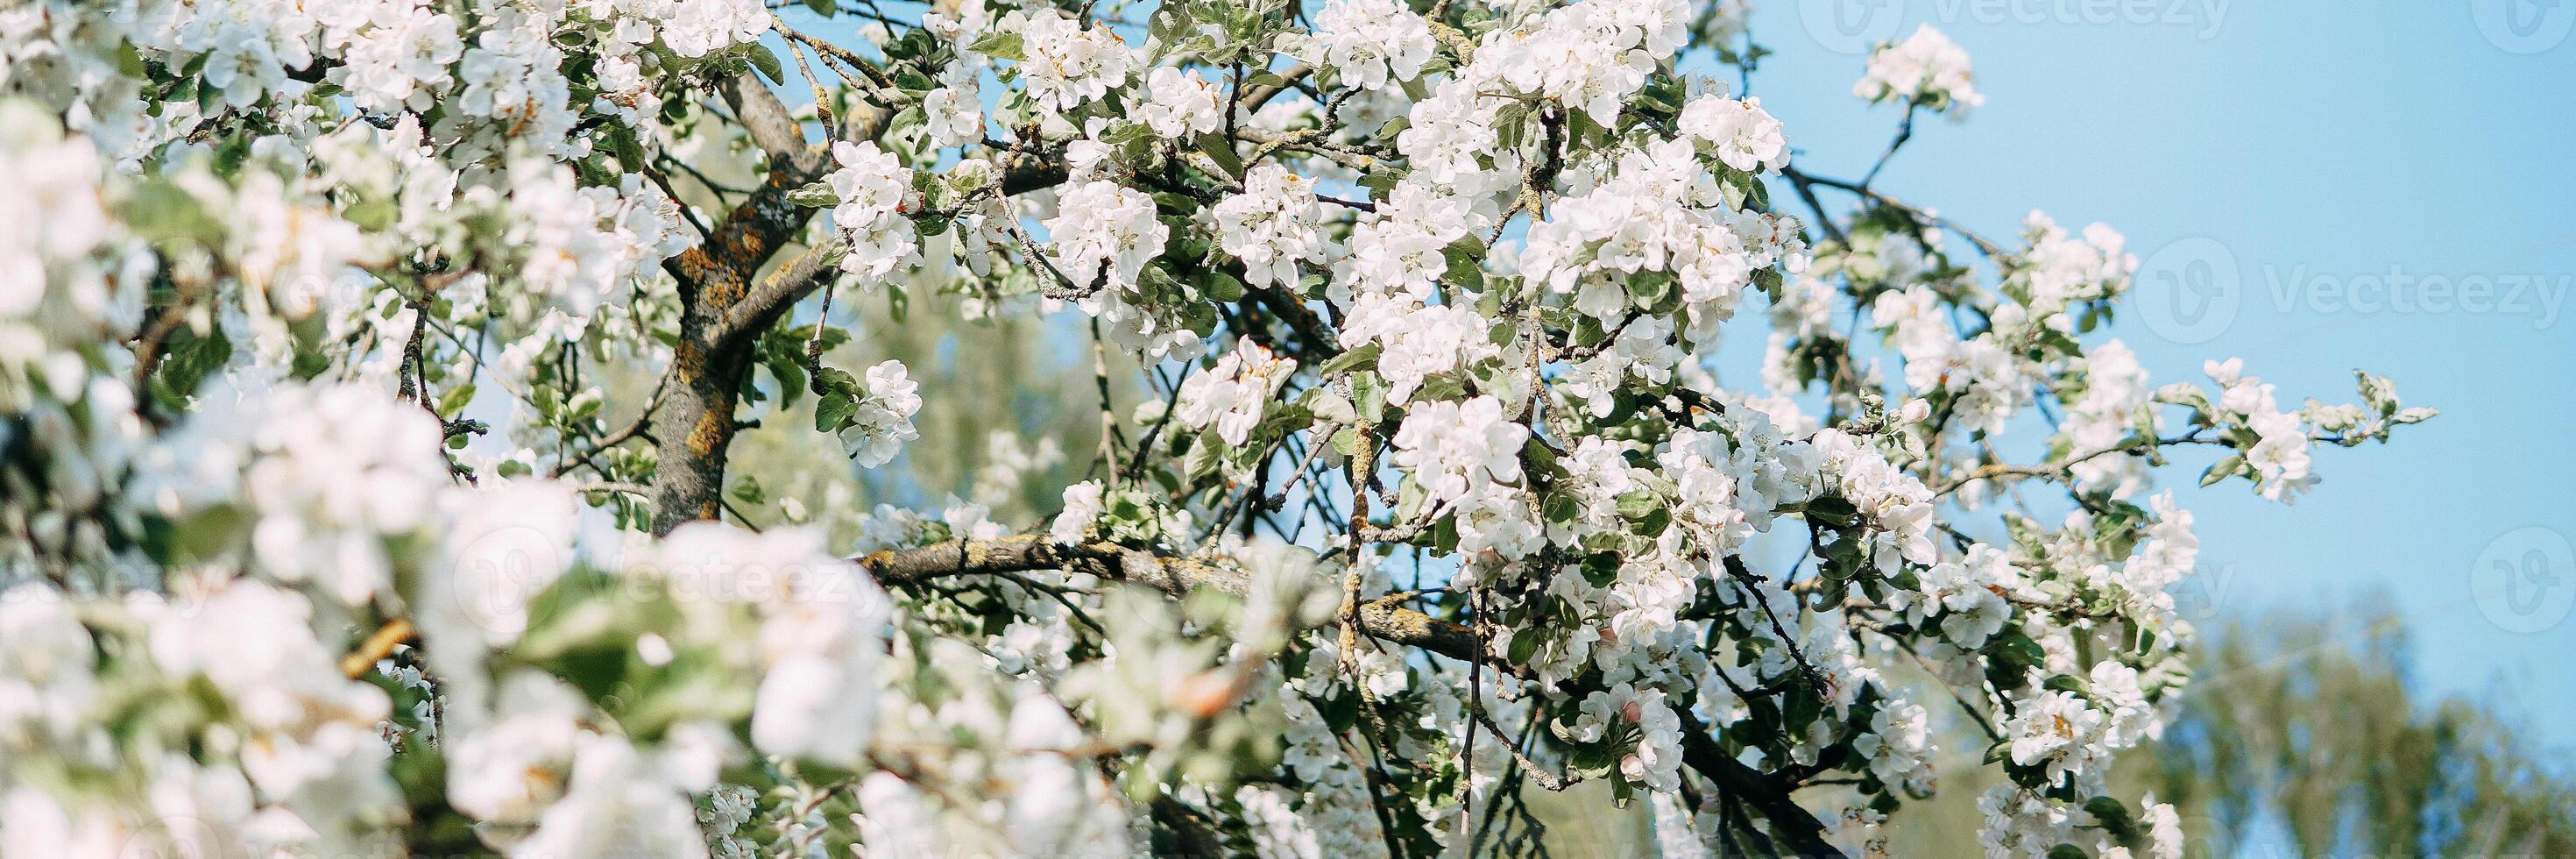 Blühen Apfel Baum Geäst mit Weiß Blumen Nahansicht. foto